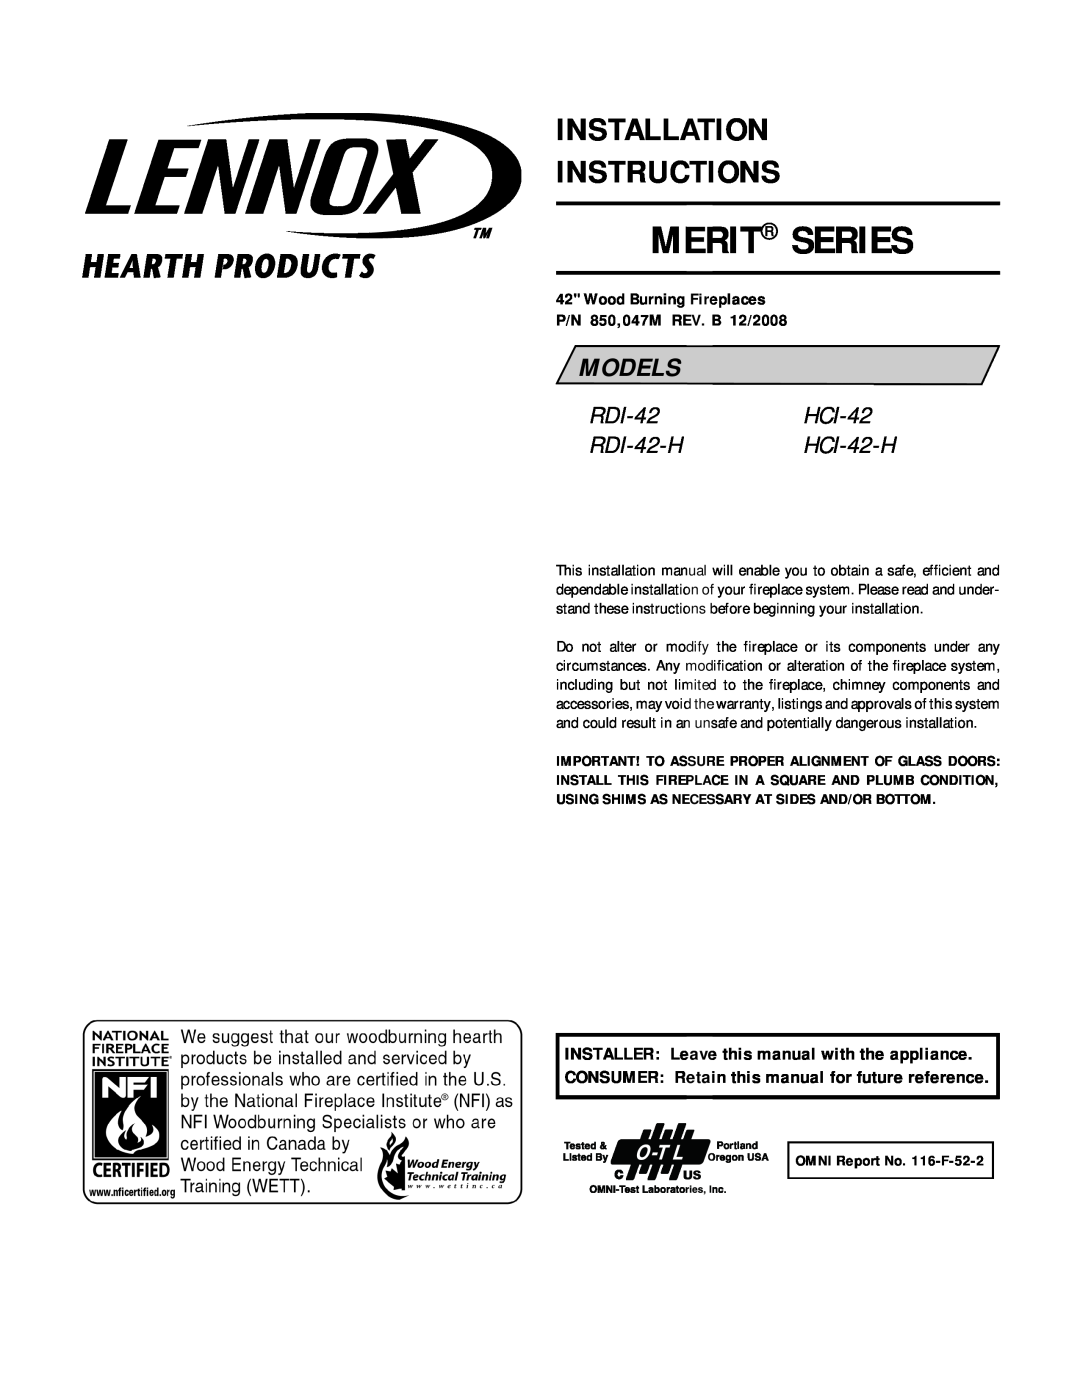 Lennox Hearth RDI-42-H, HCI-42-H installation instructions Merit Series, Installation Instructions, Models 